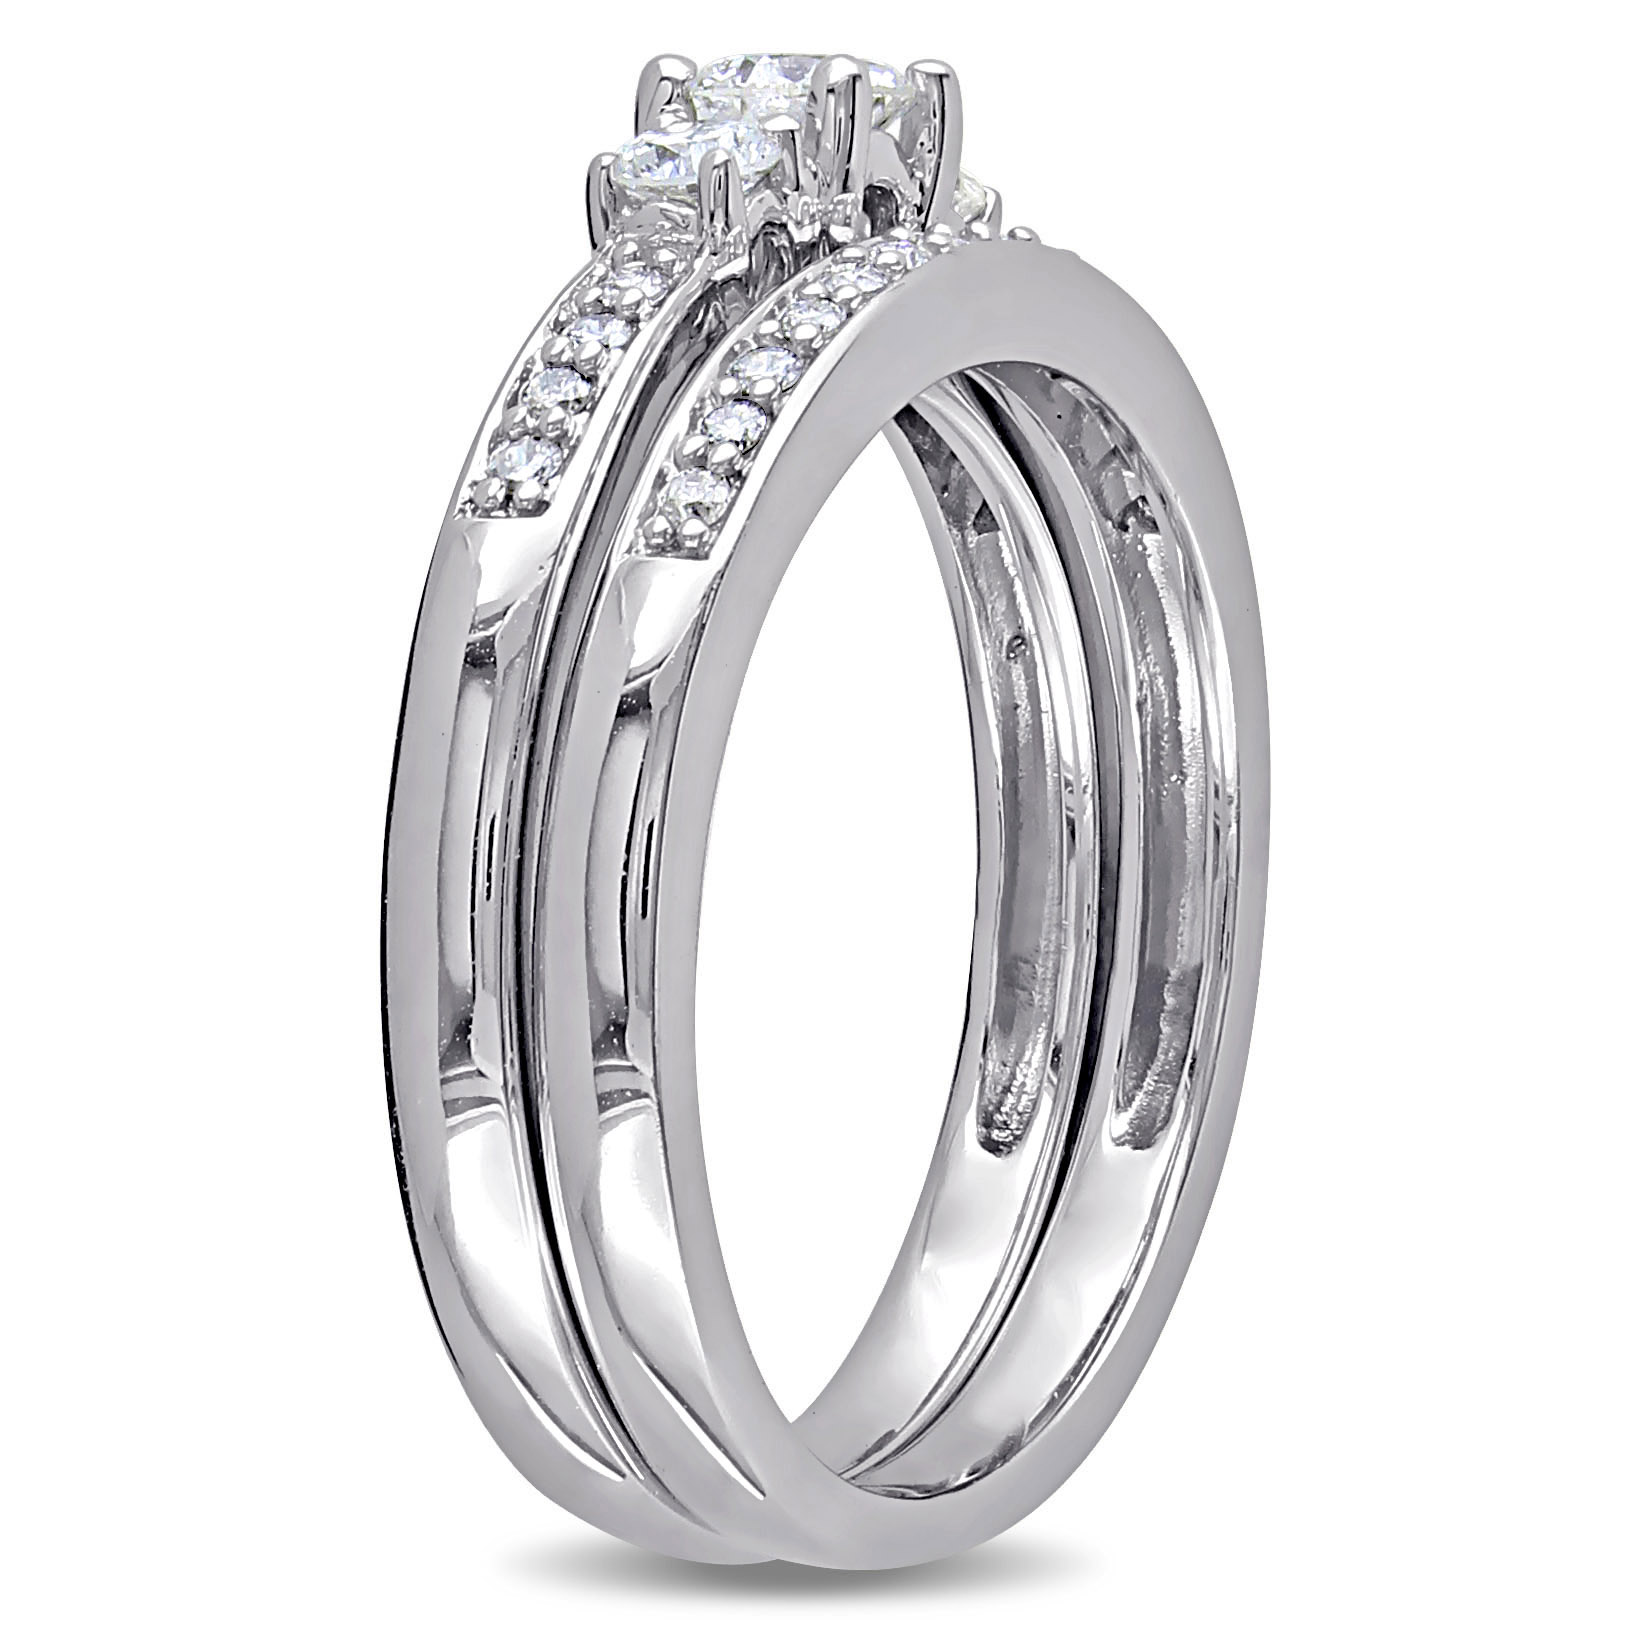 1/2 CT TW 3-Stone Diamond Bridal Set in 14k White Gold